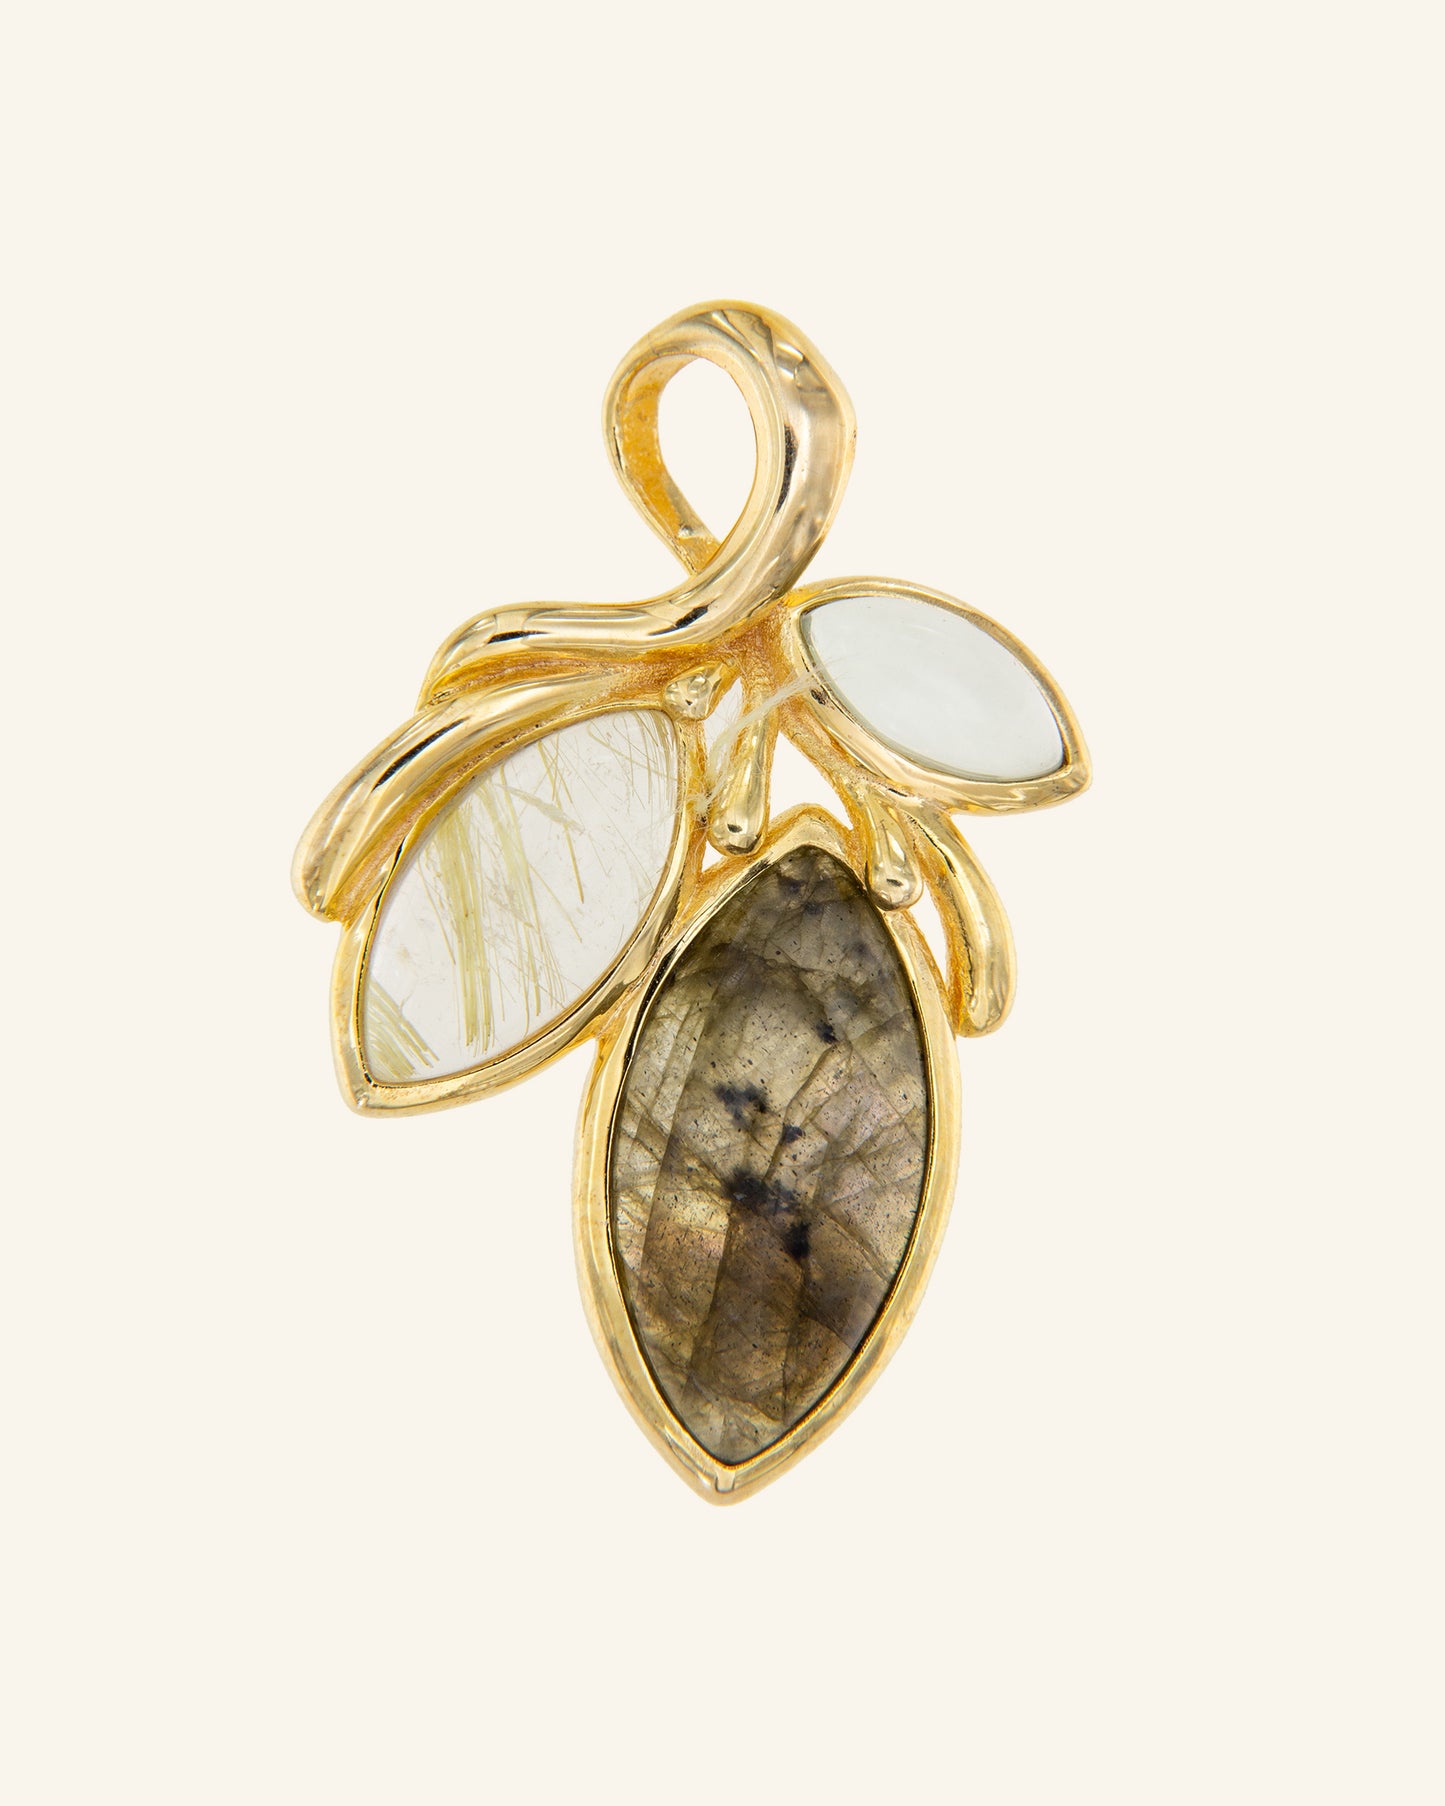 Persea pendant with rutilated quartz